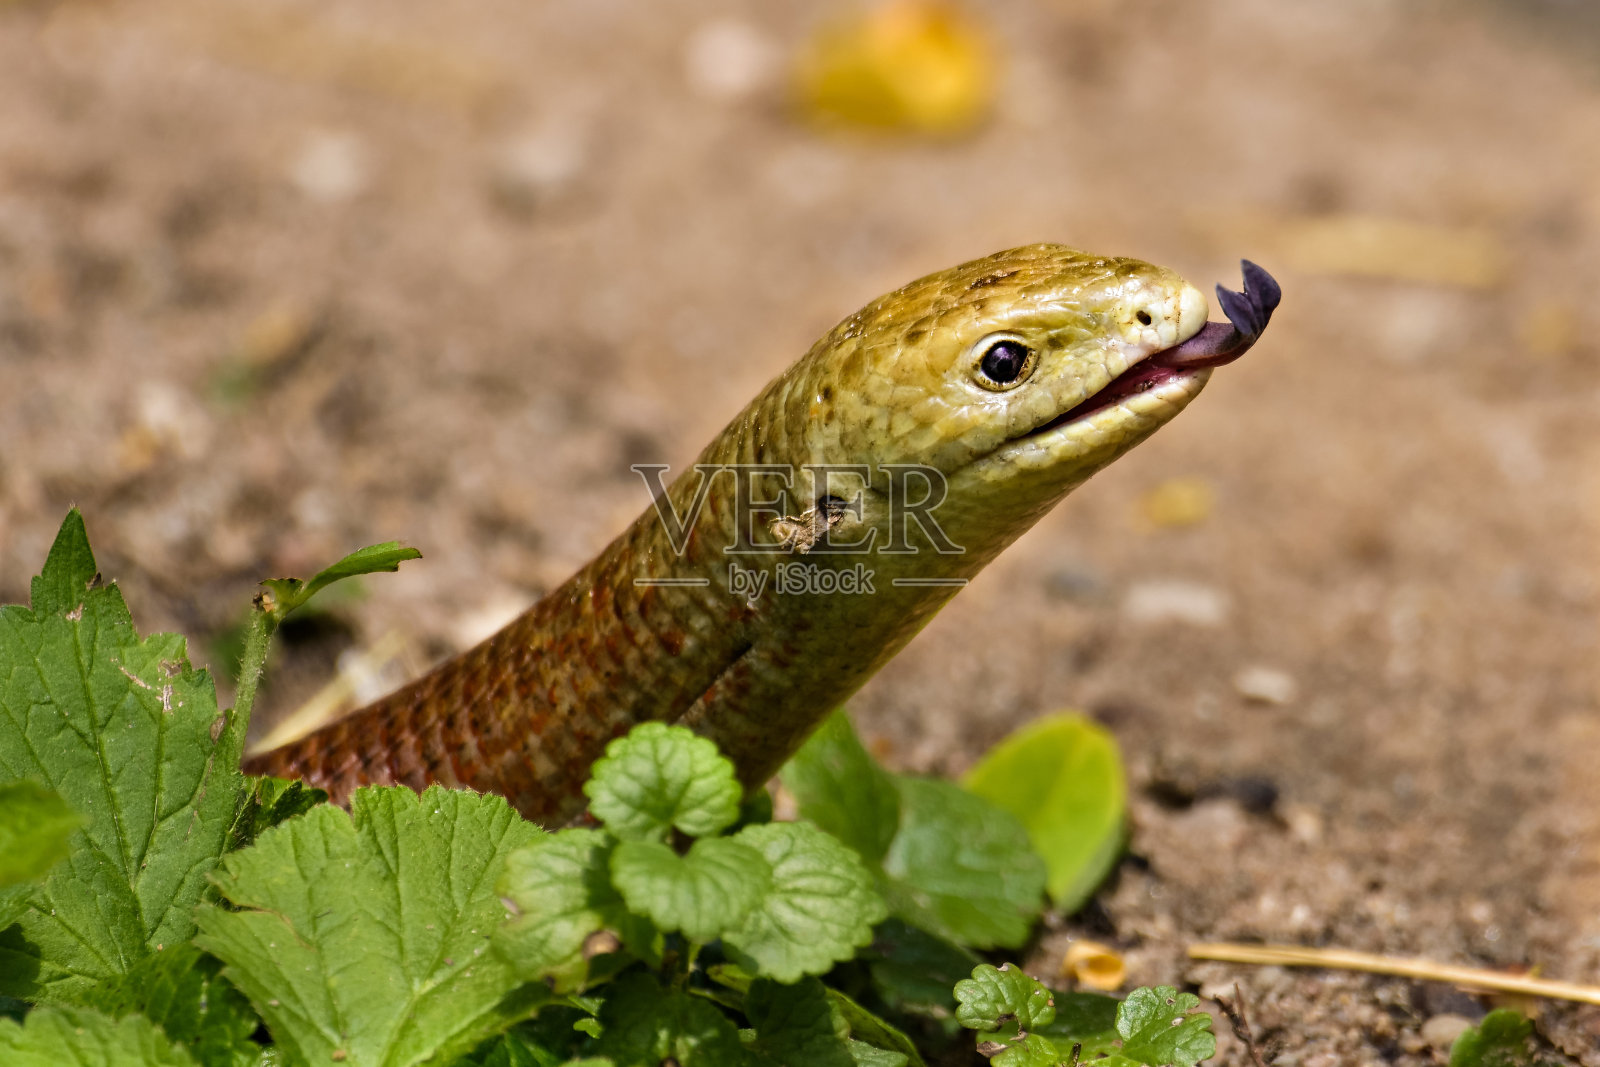 蛇舌鱼在寻找猎物时会伸出舌头照片摄影图片